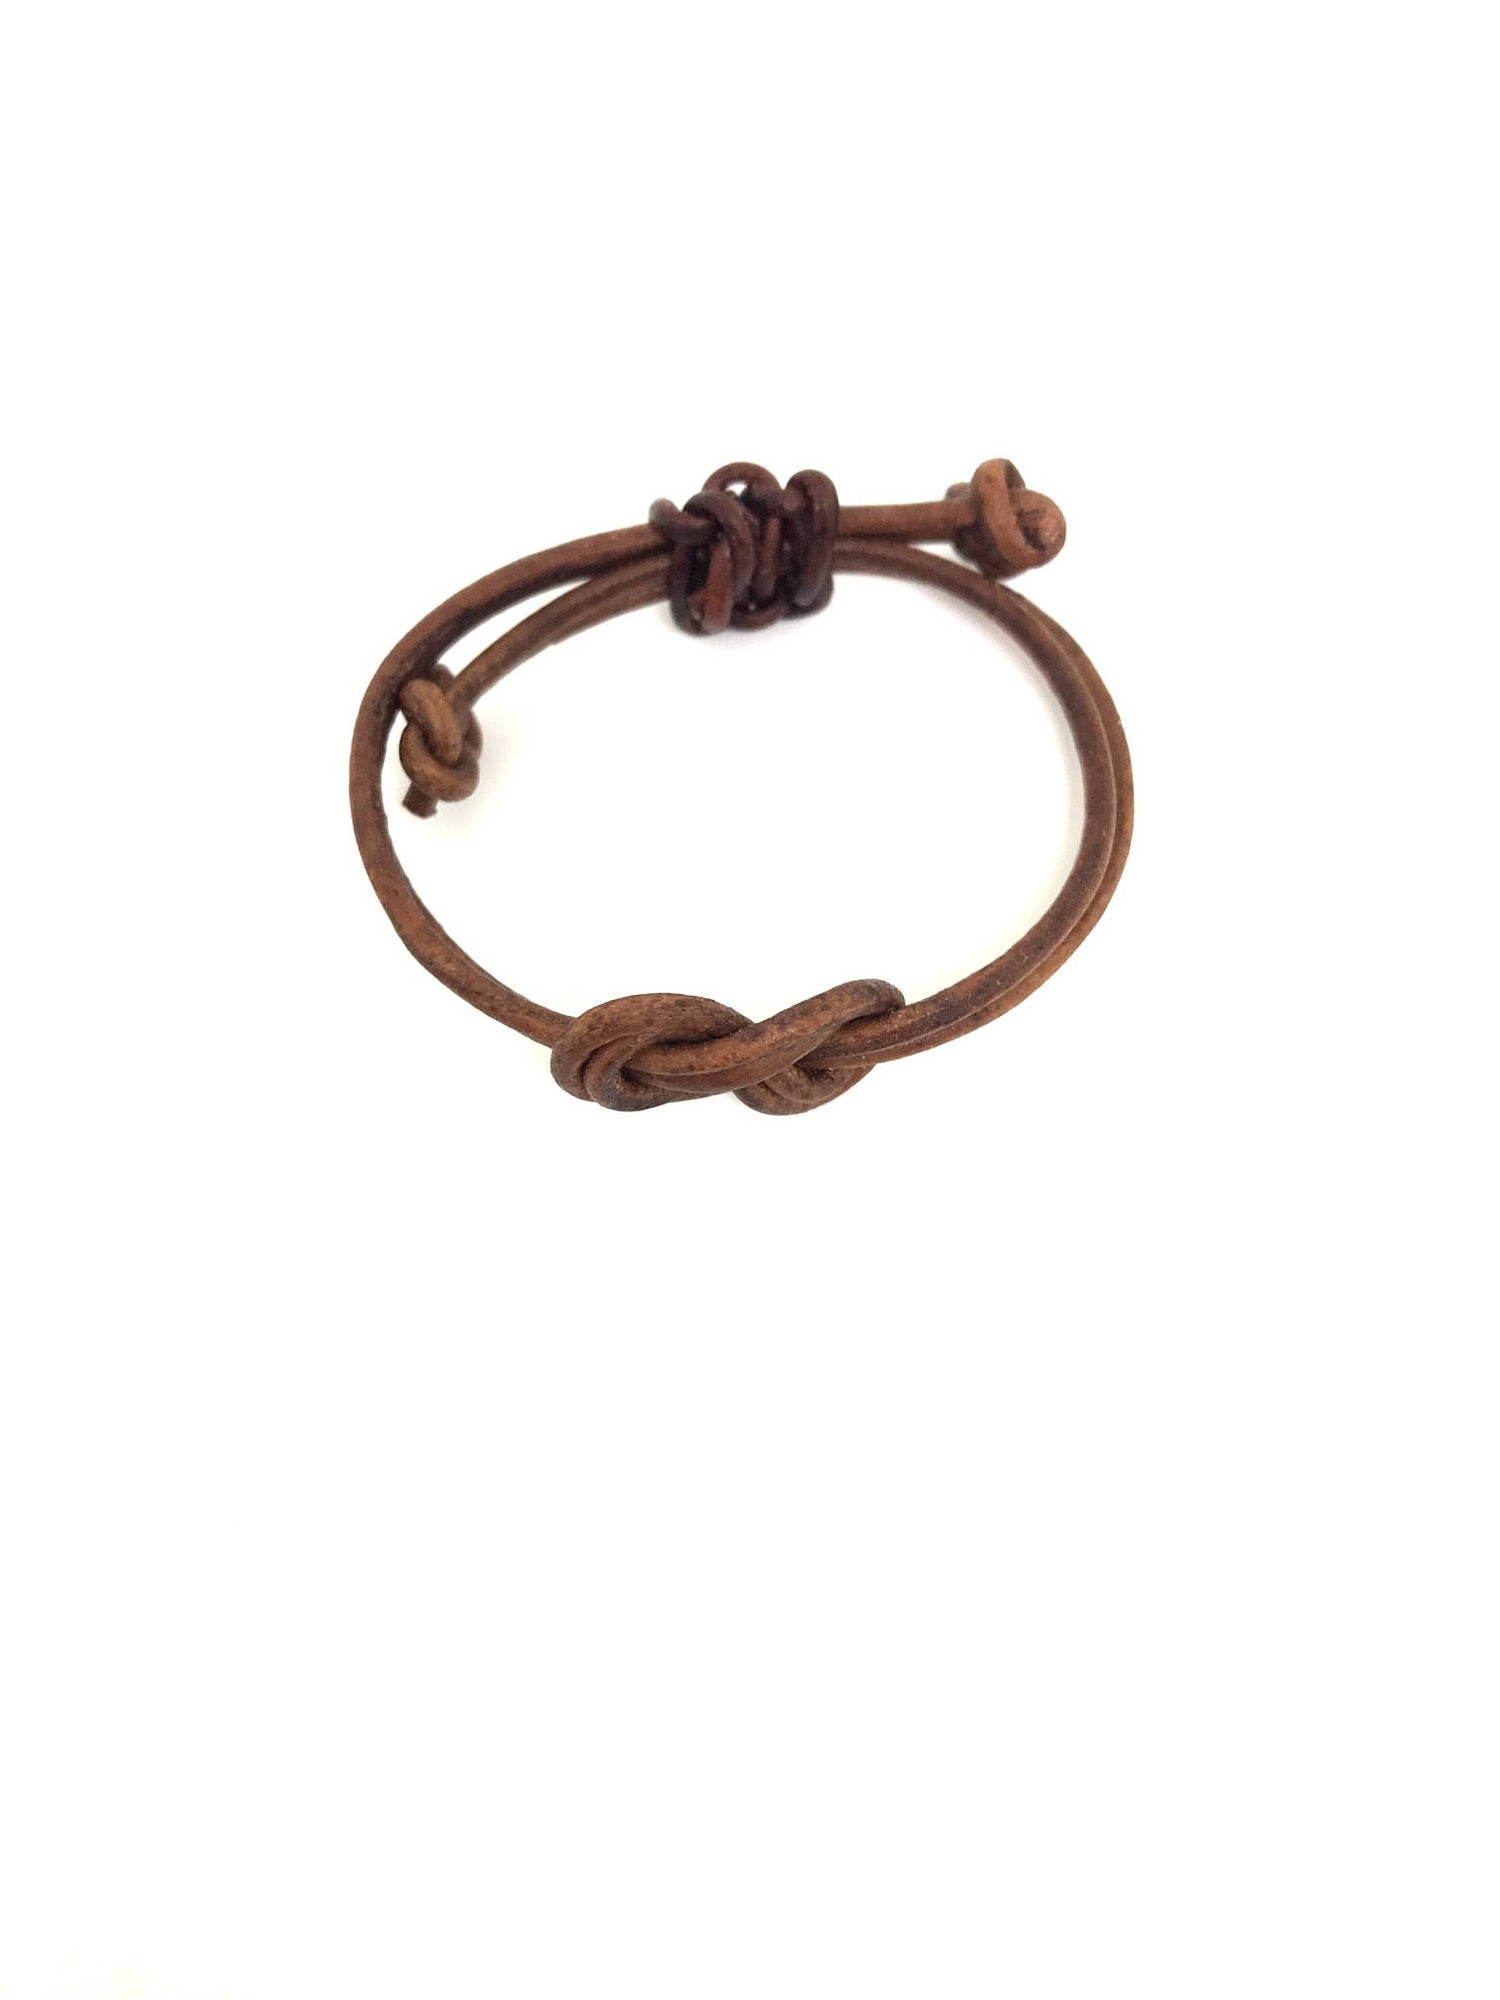 Infinity Knot Love Leather Bracelet - Gifts&Knots